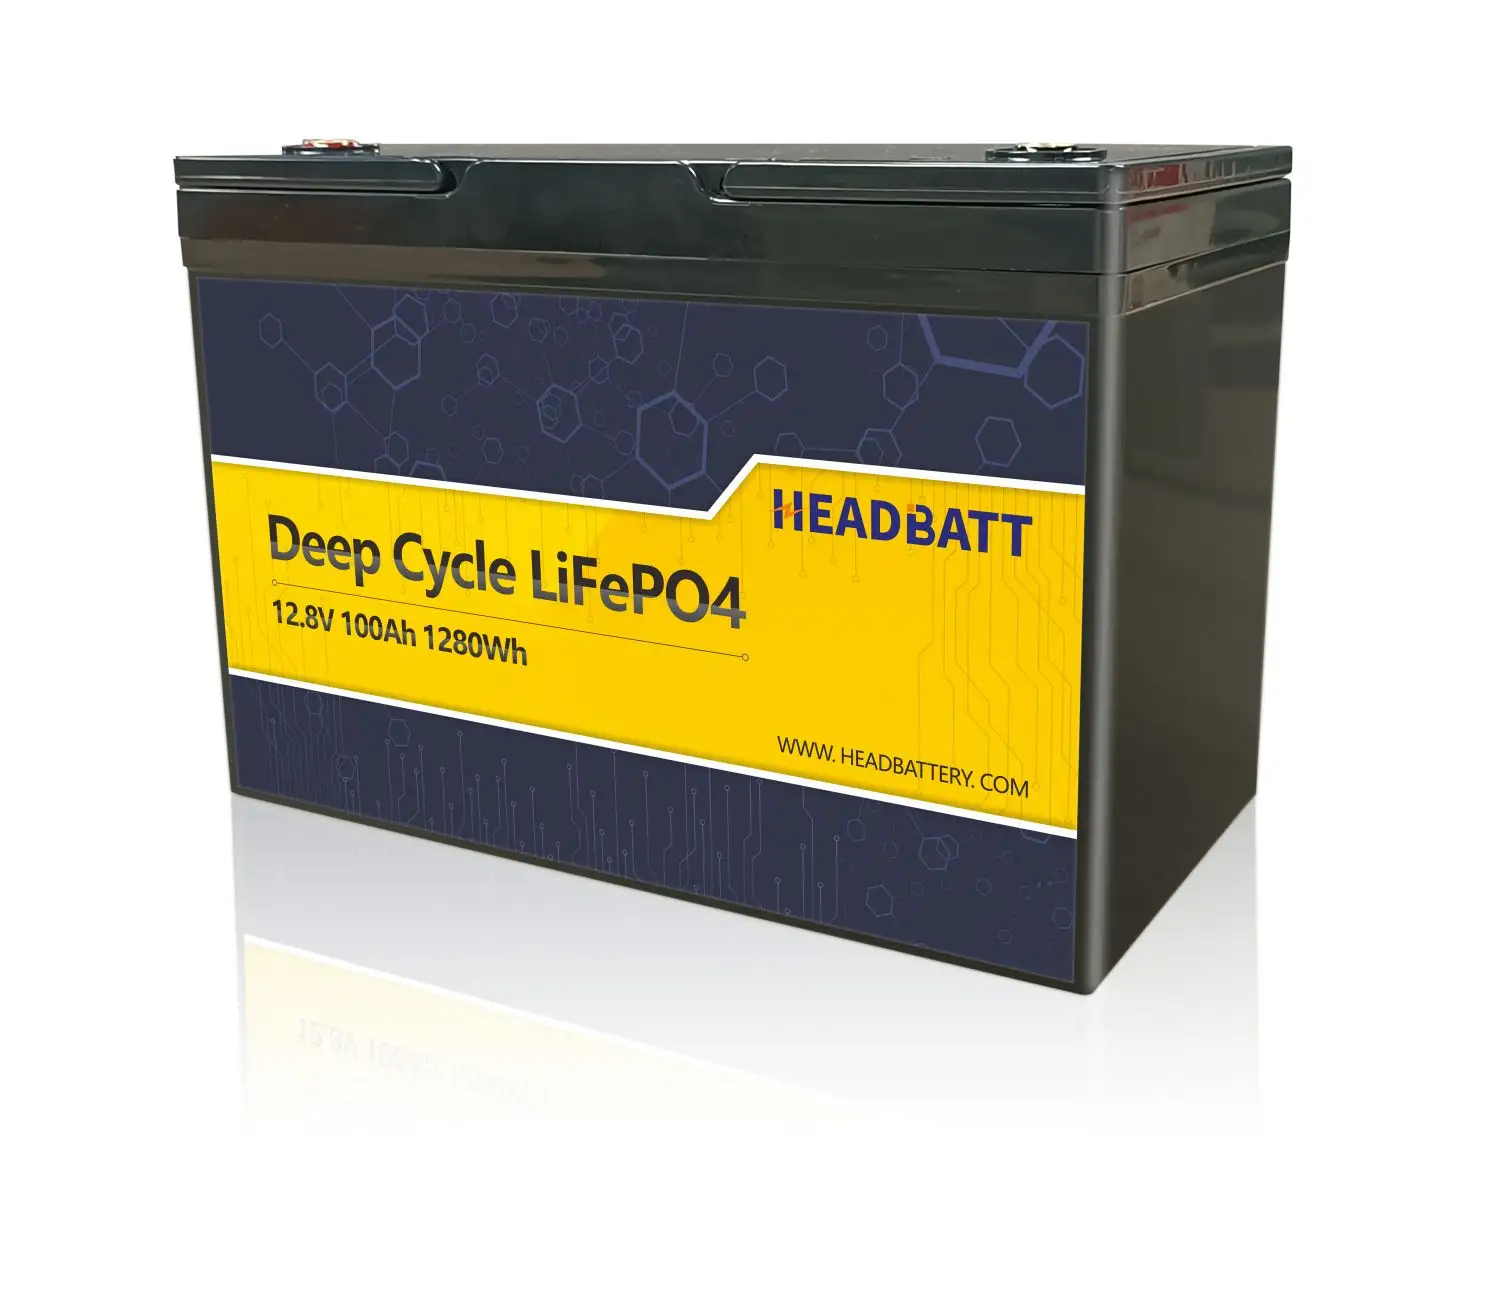 Headbatt 12v 100ah lifepo4 بطاريات حزمة مع 4S1P 3.2V 100ah المنشورية IEC الخليوي ل UPS ، مستشفى